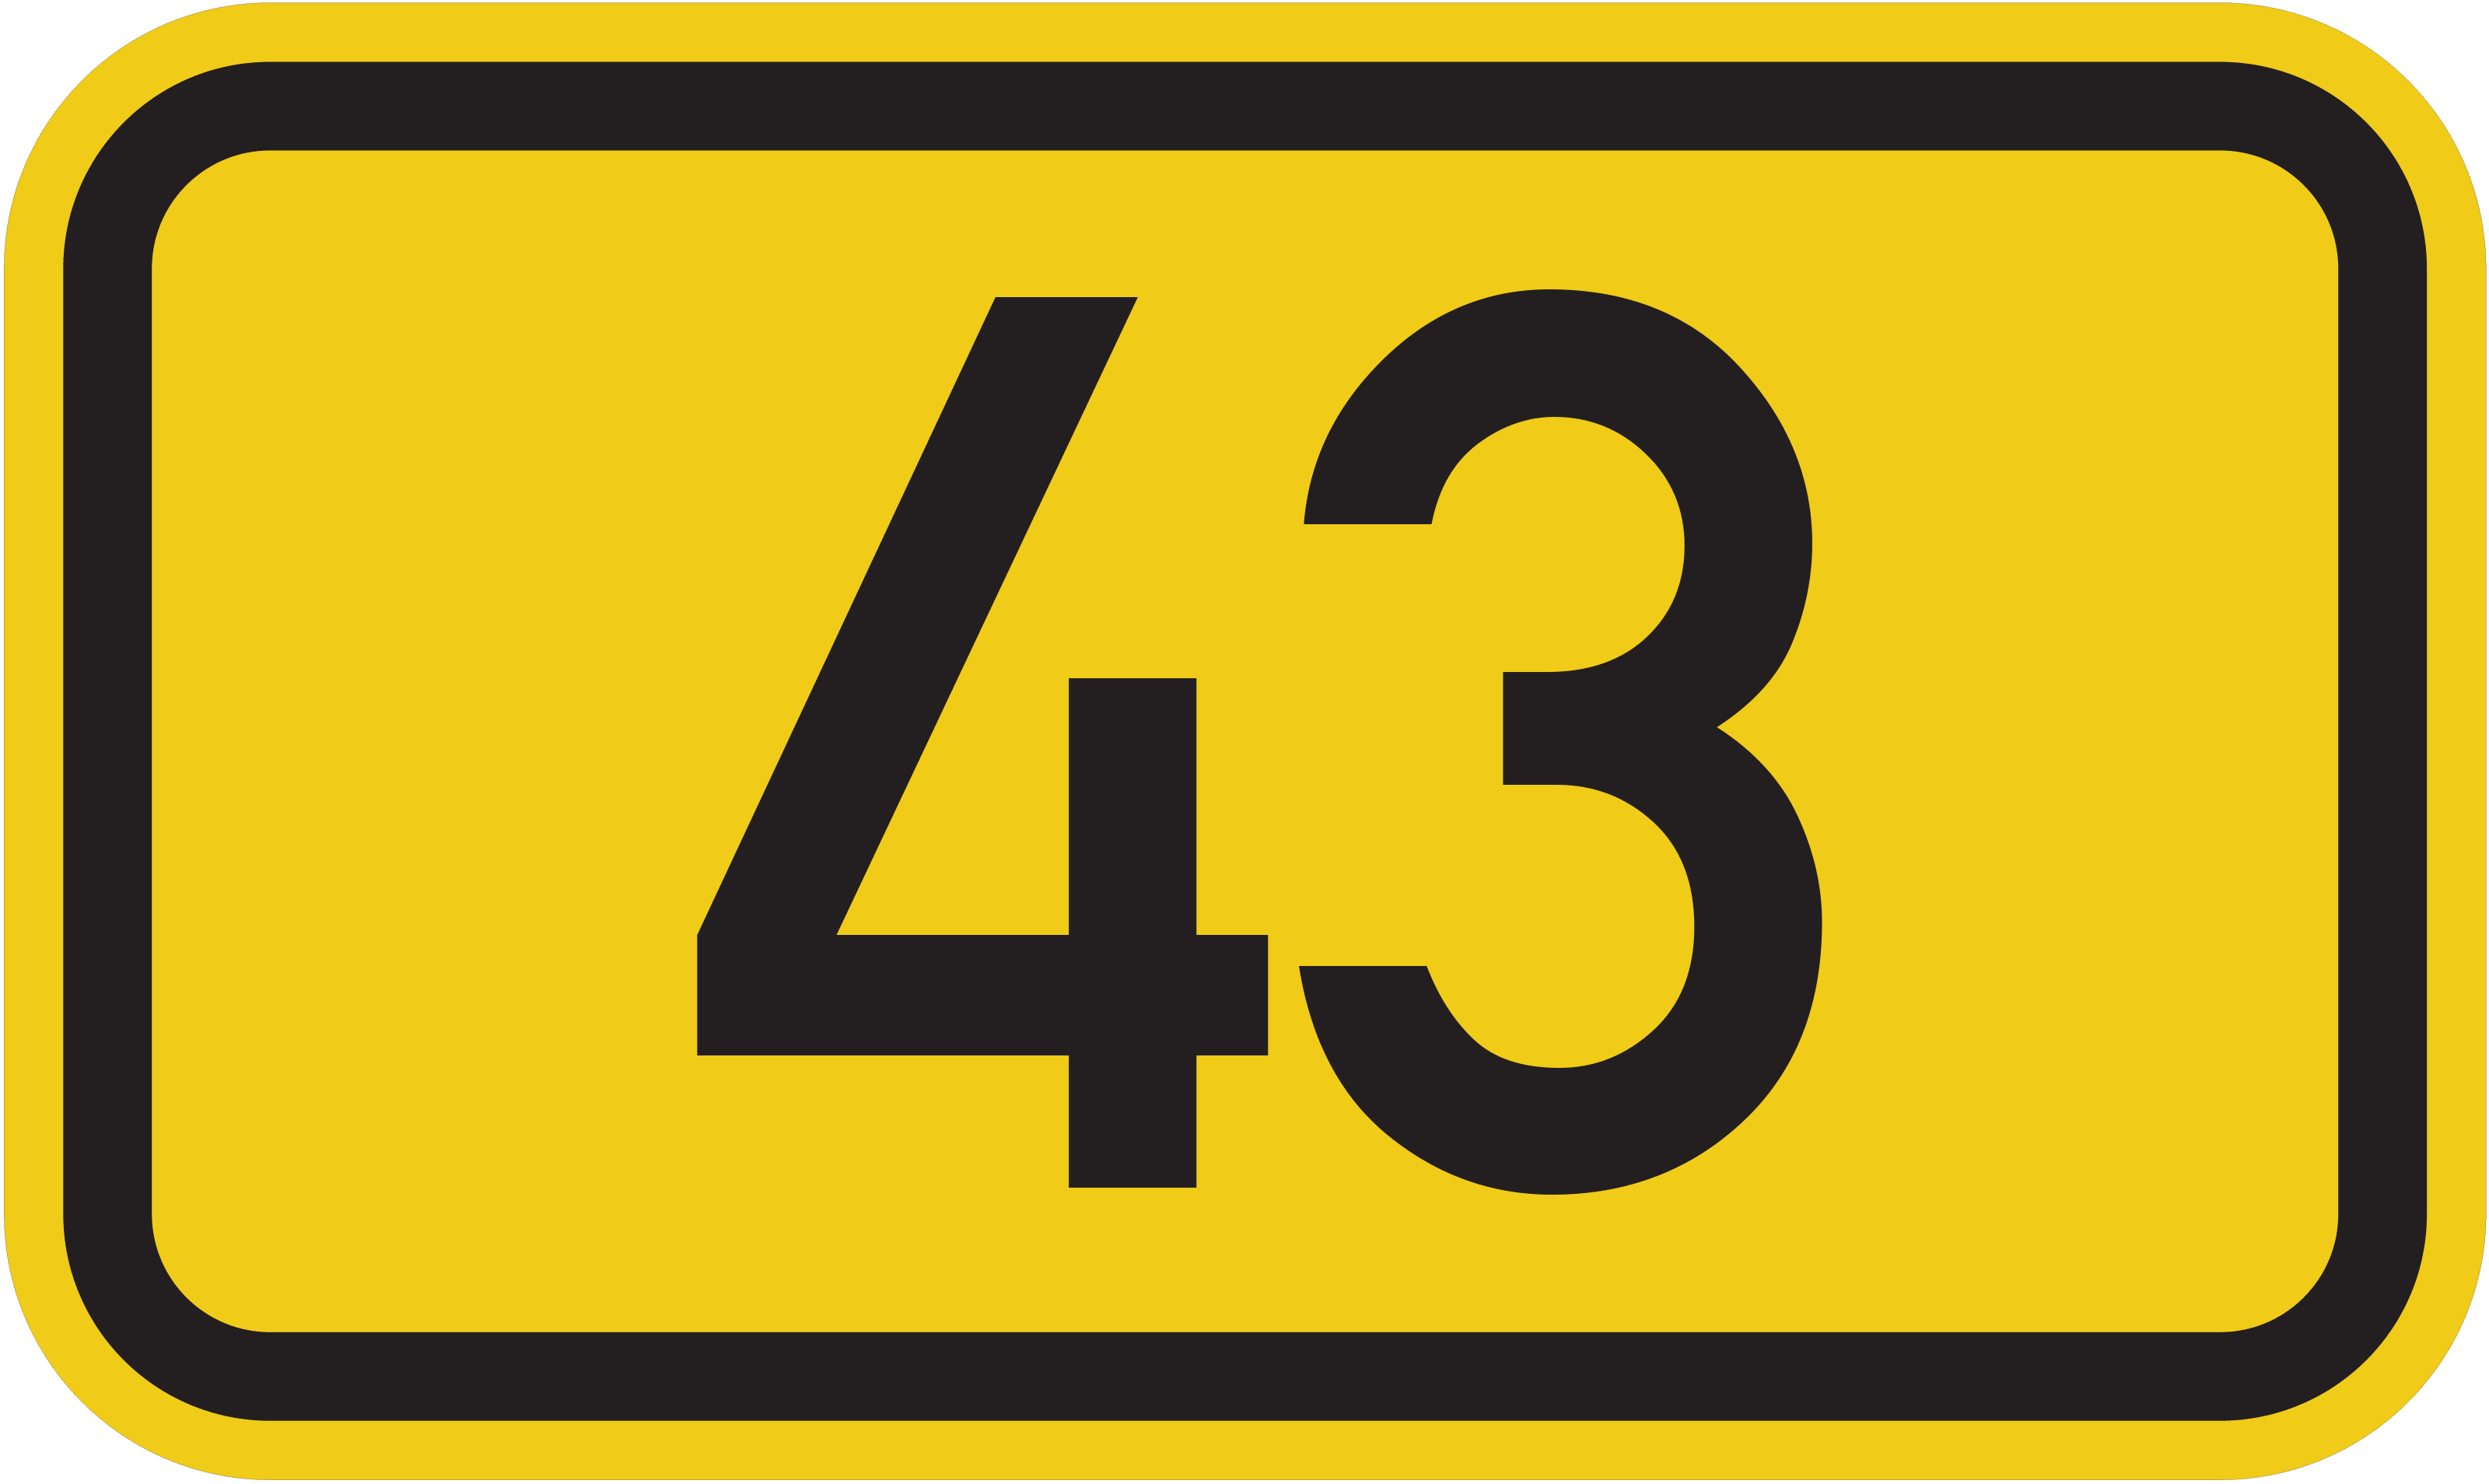 Bundesstraße B 43